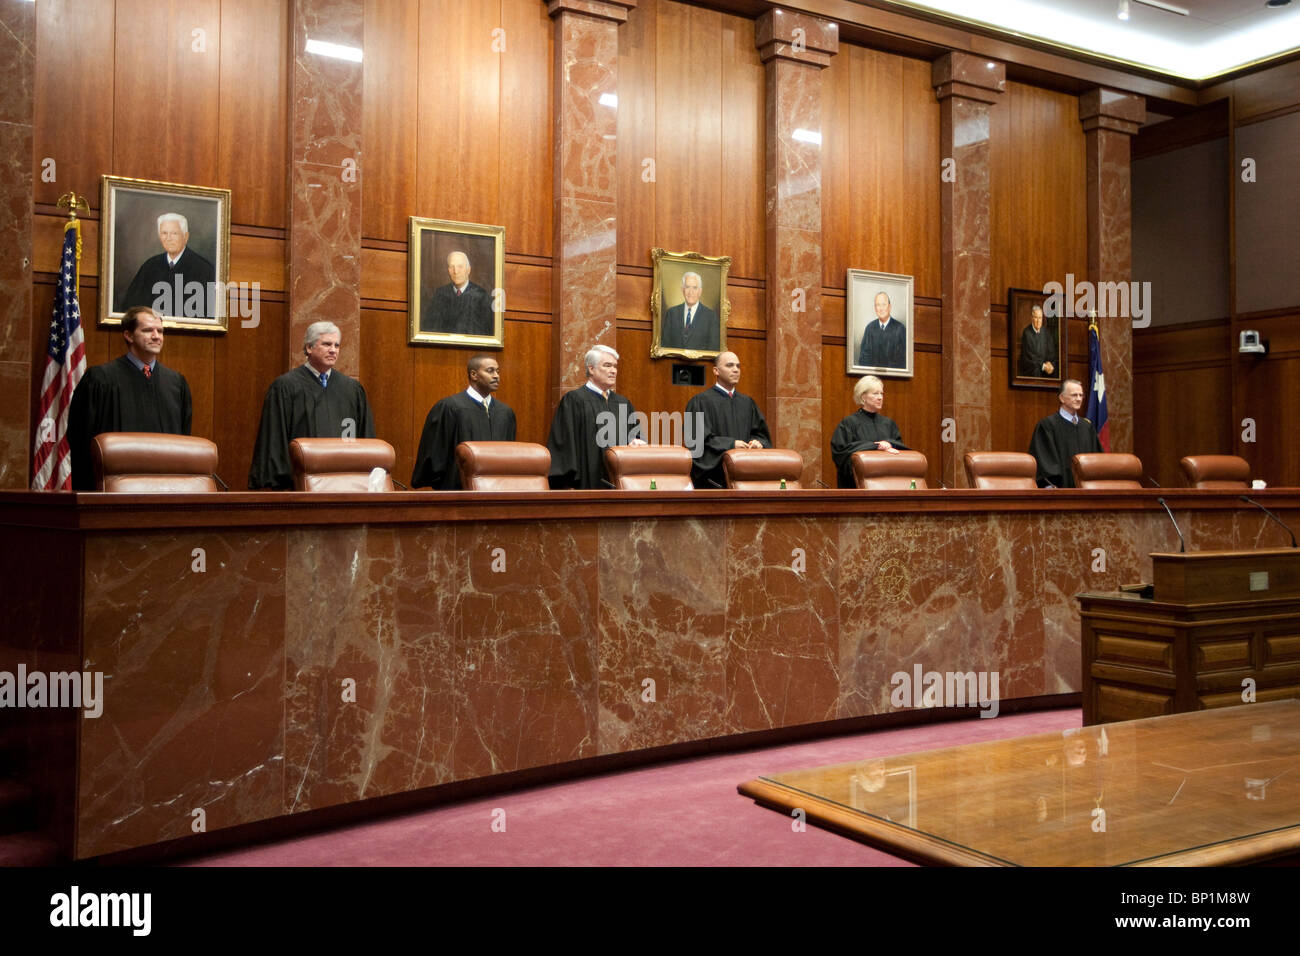 La Cour suprême du Texas rencontrez dans une session de cérémonie pour honorer les anciens membres à l'Édifice de la Cour suprême à Austin. Banque D'Images